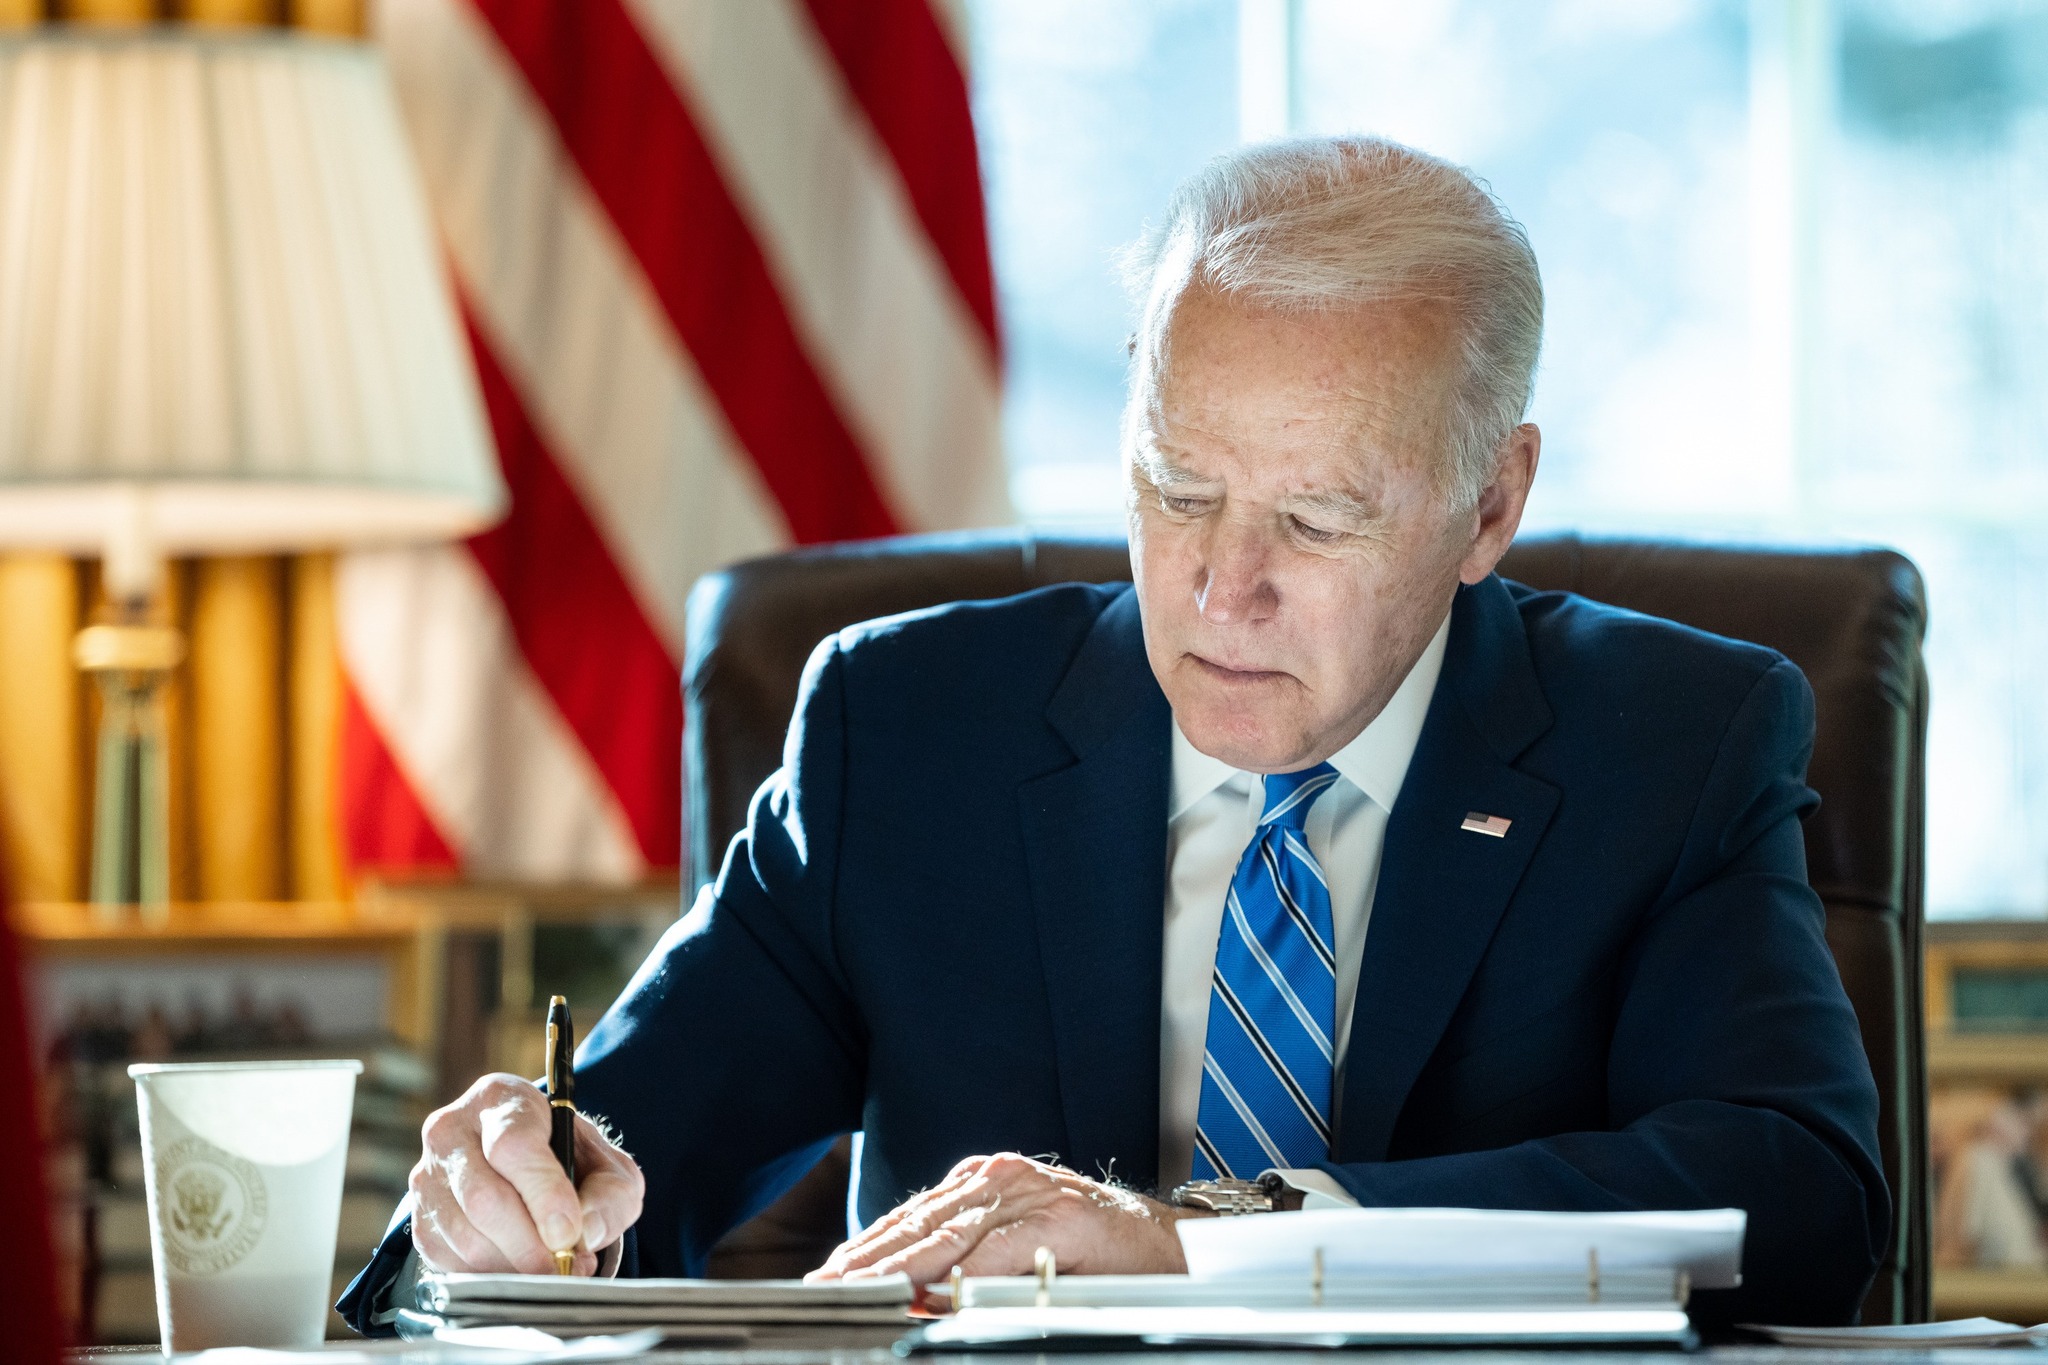 El Presidente Biden anuncia la cancelación de hasta $20,000 de préstamos estudiantiles